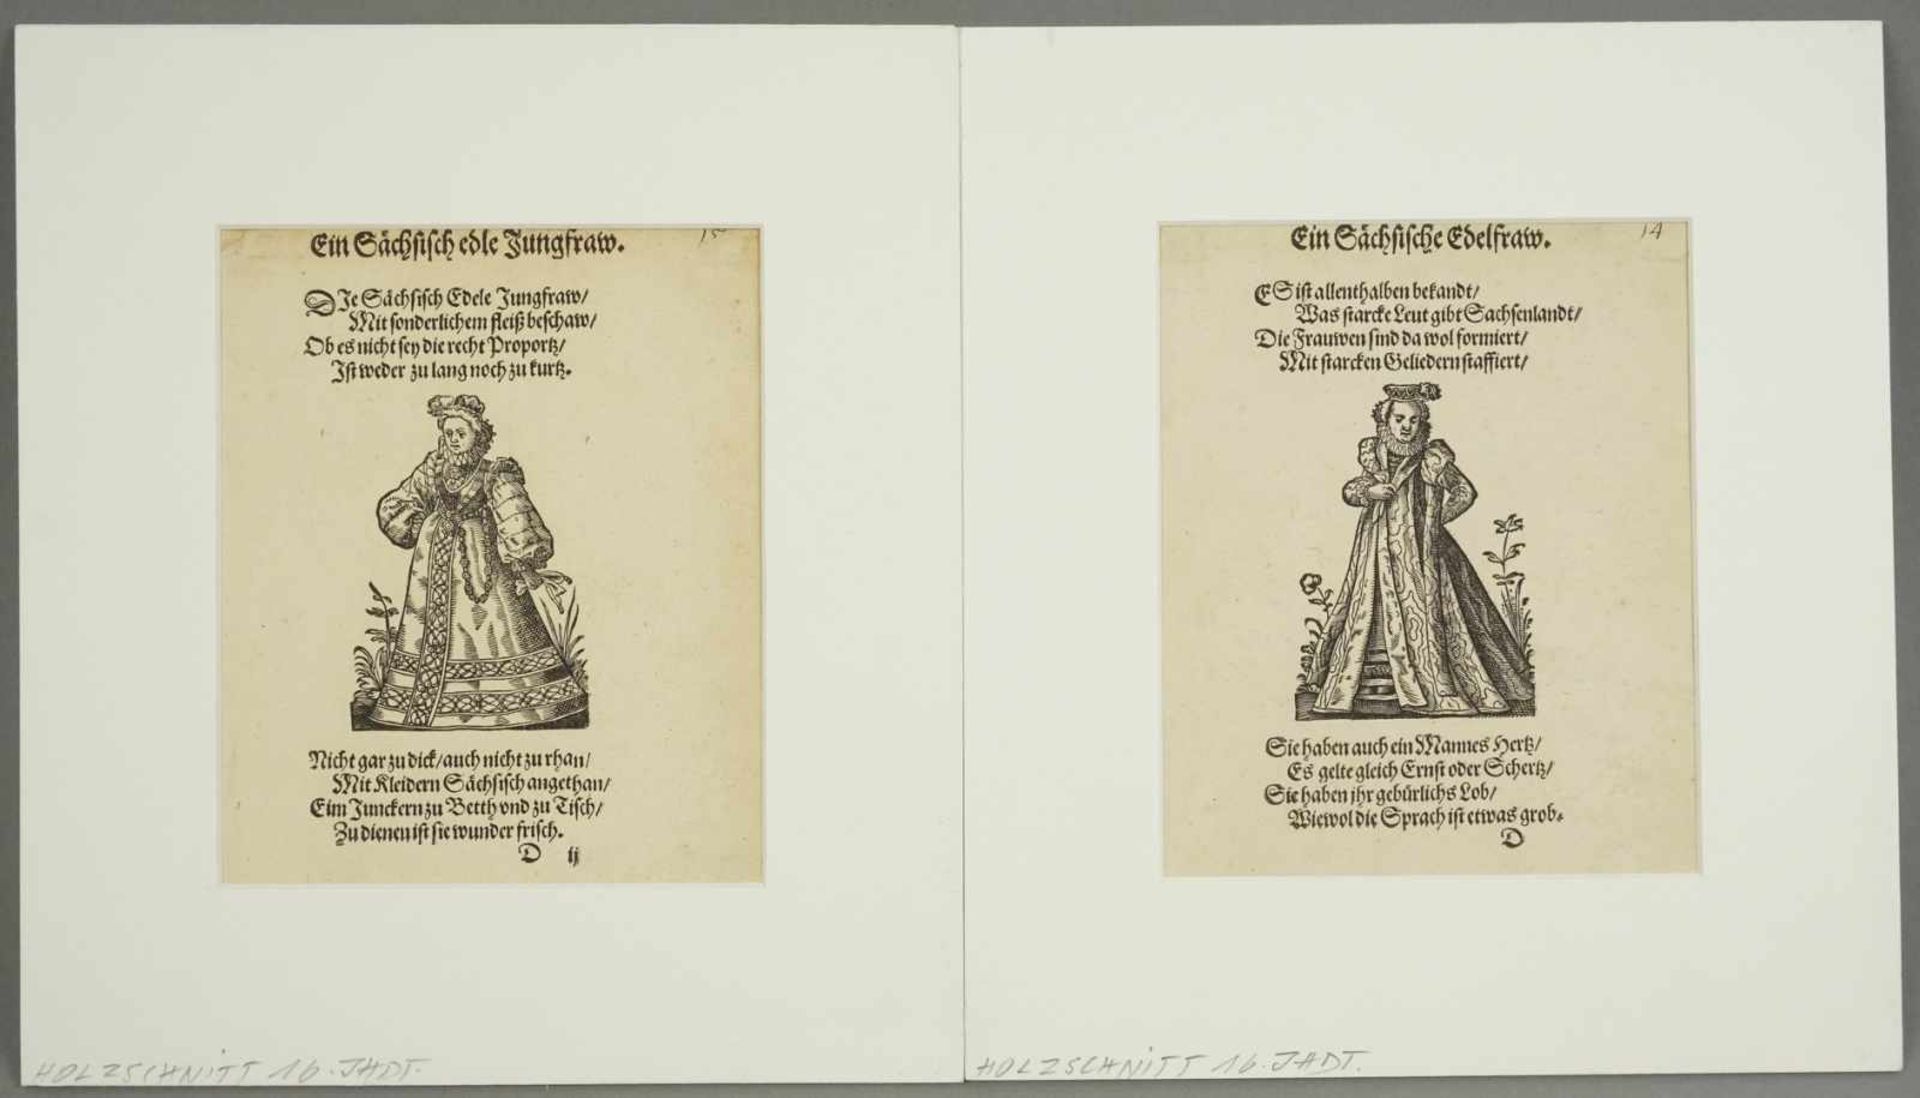 Unbekannter Künstler, "Ein Sächsisch edle Jungfrau", "Eine Sächsische Edelfrau"